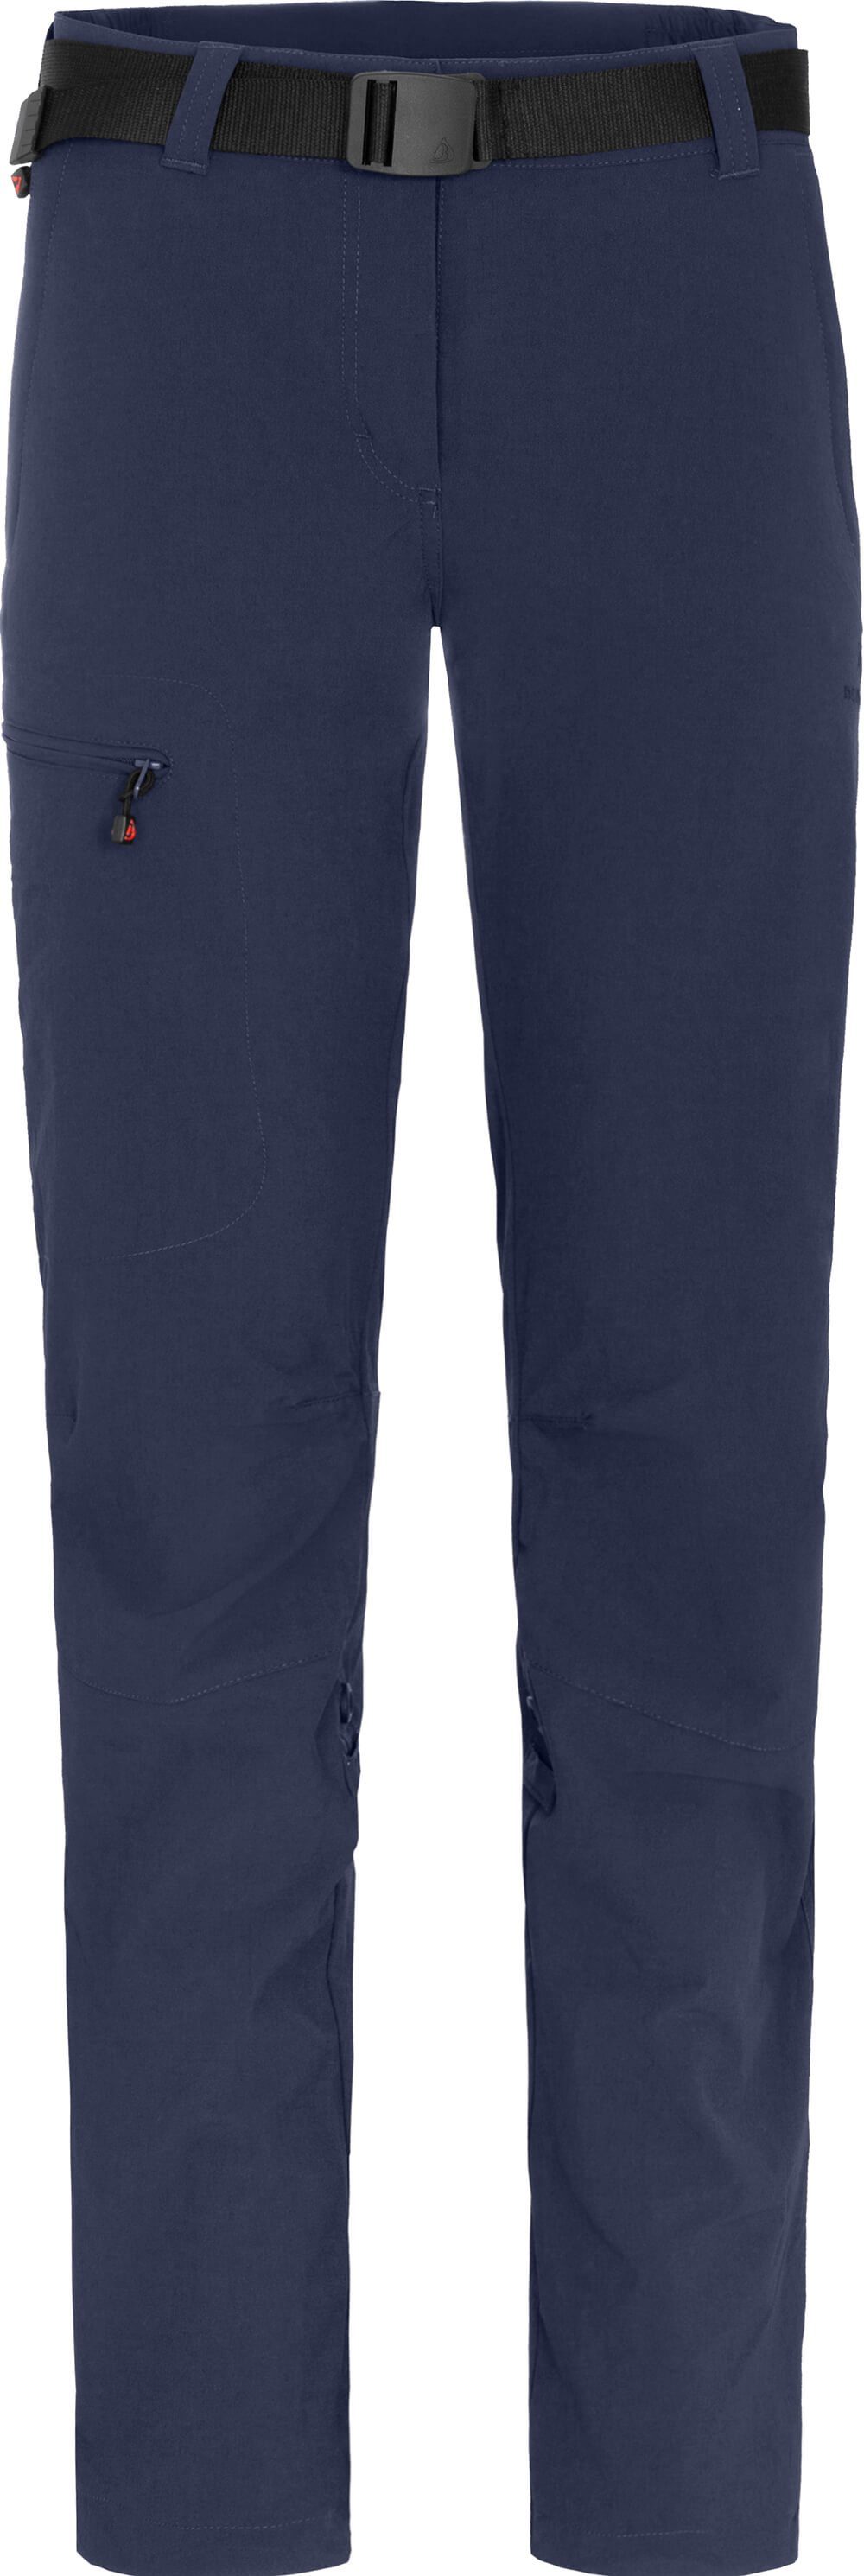 Bergson Outdoorhose HYDRYS Damen Wanderhose, vielseitig, pflegeleicht, Kurzgrößen, peacoat blau